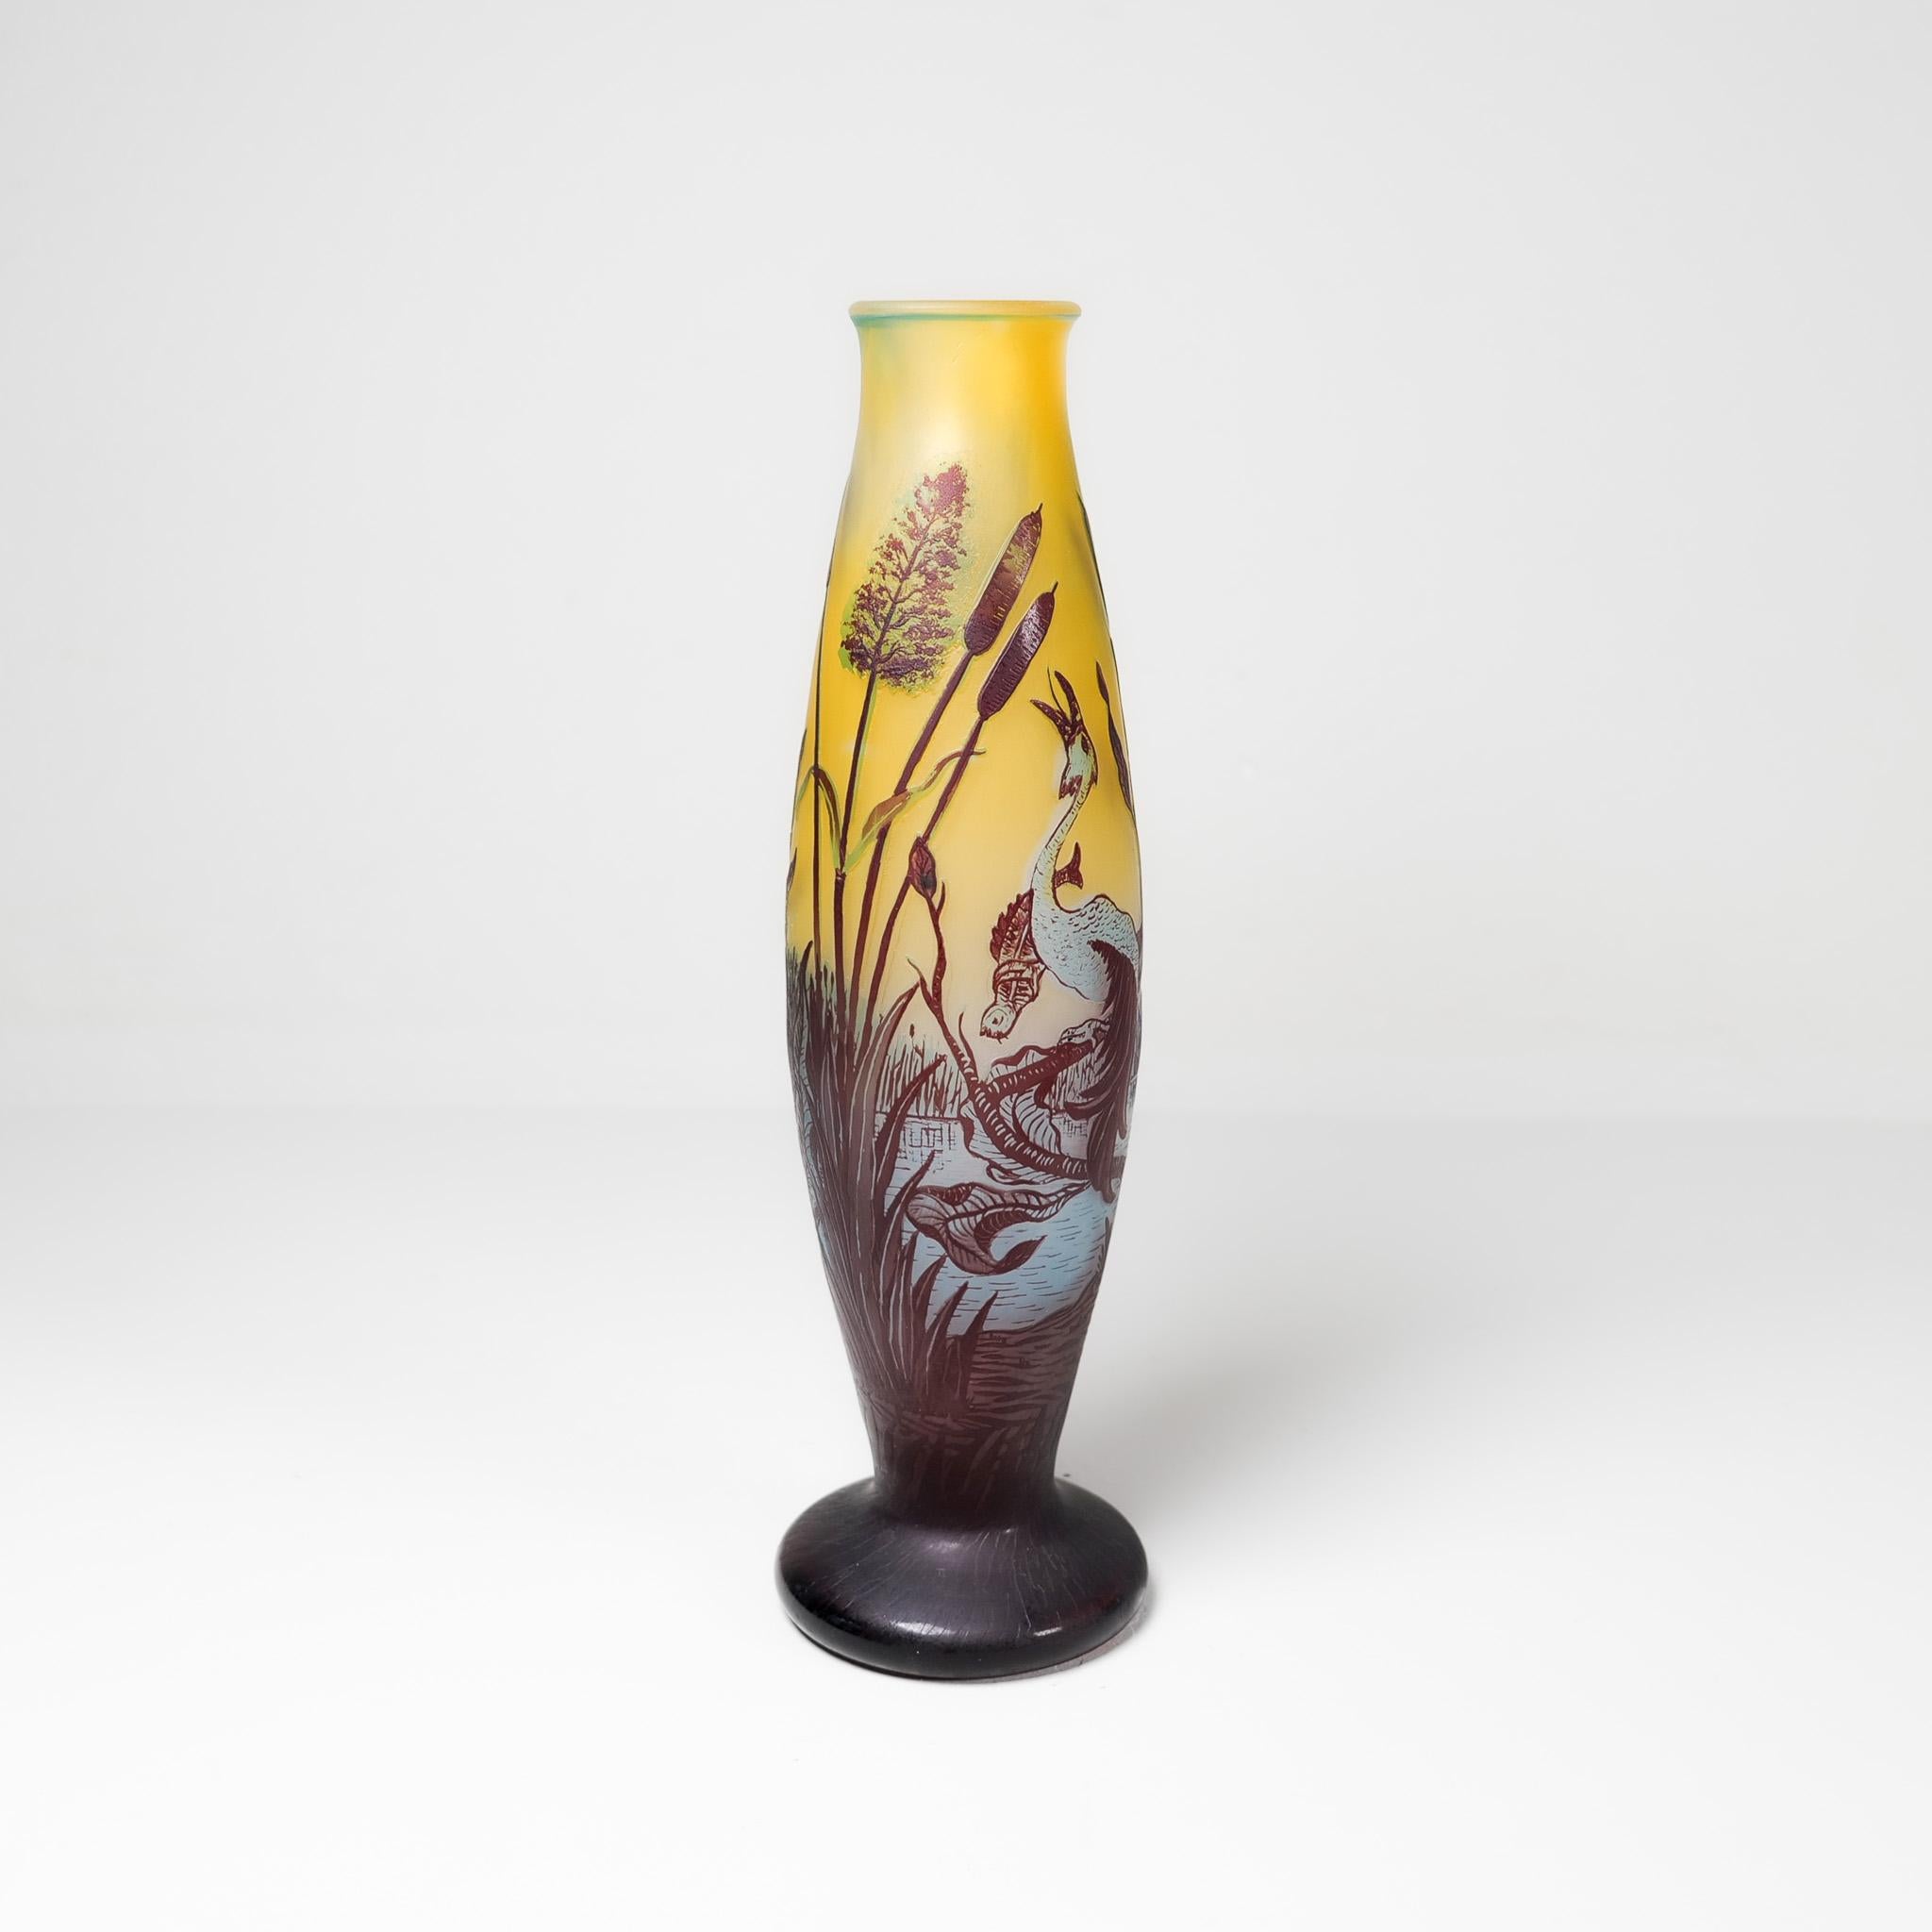 Vase aus geschnitztem Glas im Jugendstil. Schöne Formen mit schönem Schnitzmotiv. In außergewöhnlich gutem Zustand. Die Vase ist unter dem Boden signiert. Datiert 1901-1910 Schweden wahrscheinlich Axel Enoch Boman.

Wunderbarer Originalzustand.